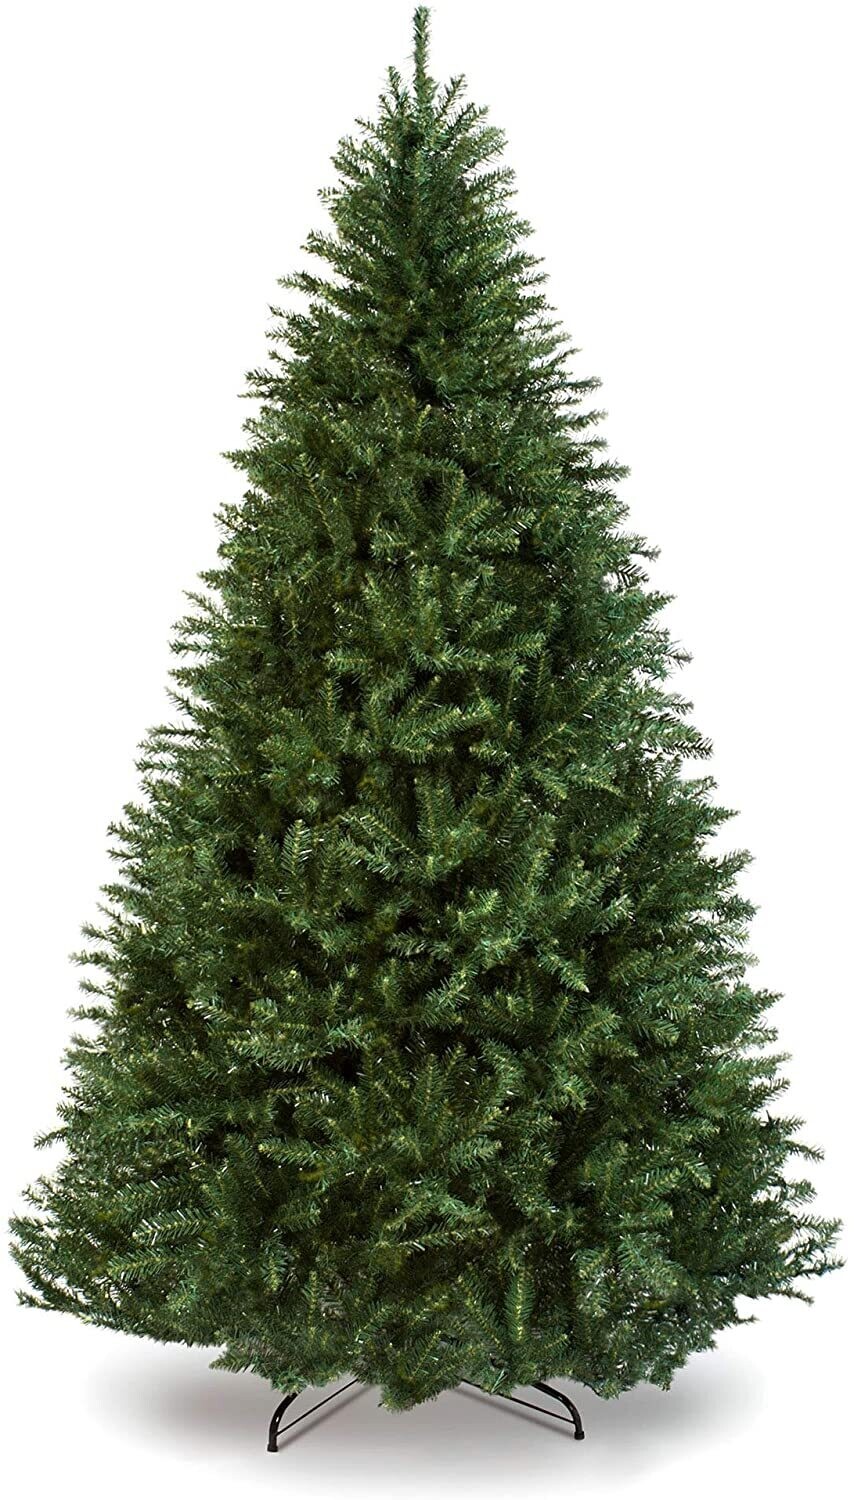 PVC Christmas Tree Green 6ft - 450 Tips of Festive Splendor